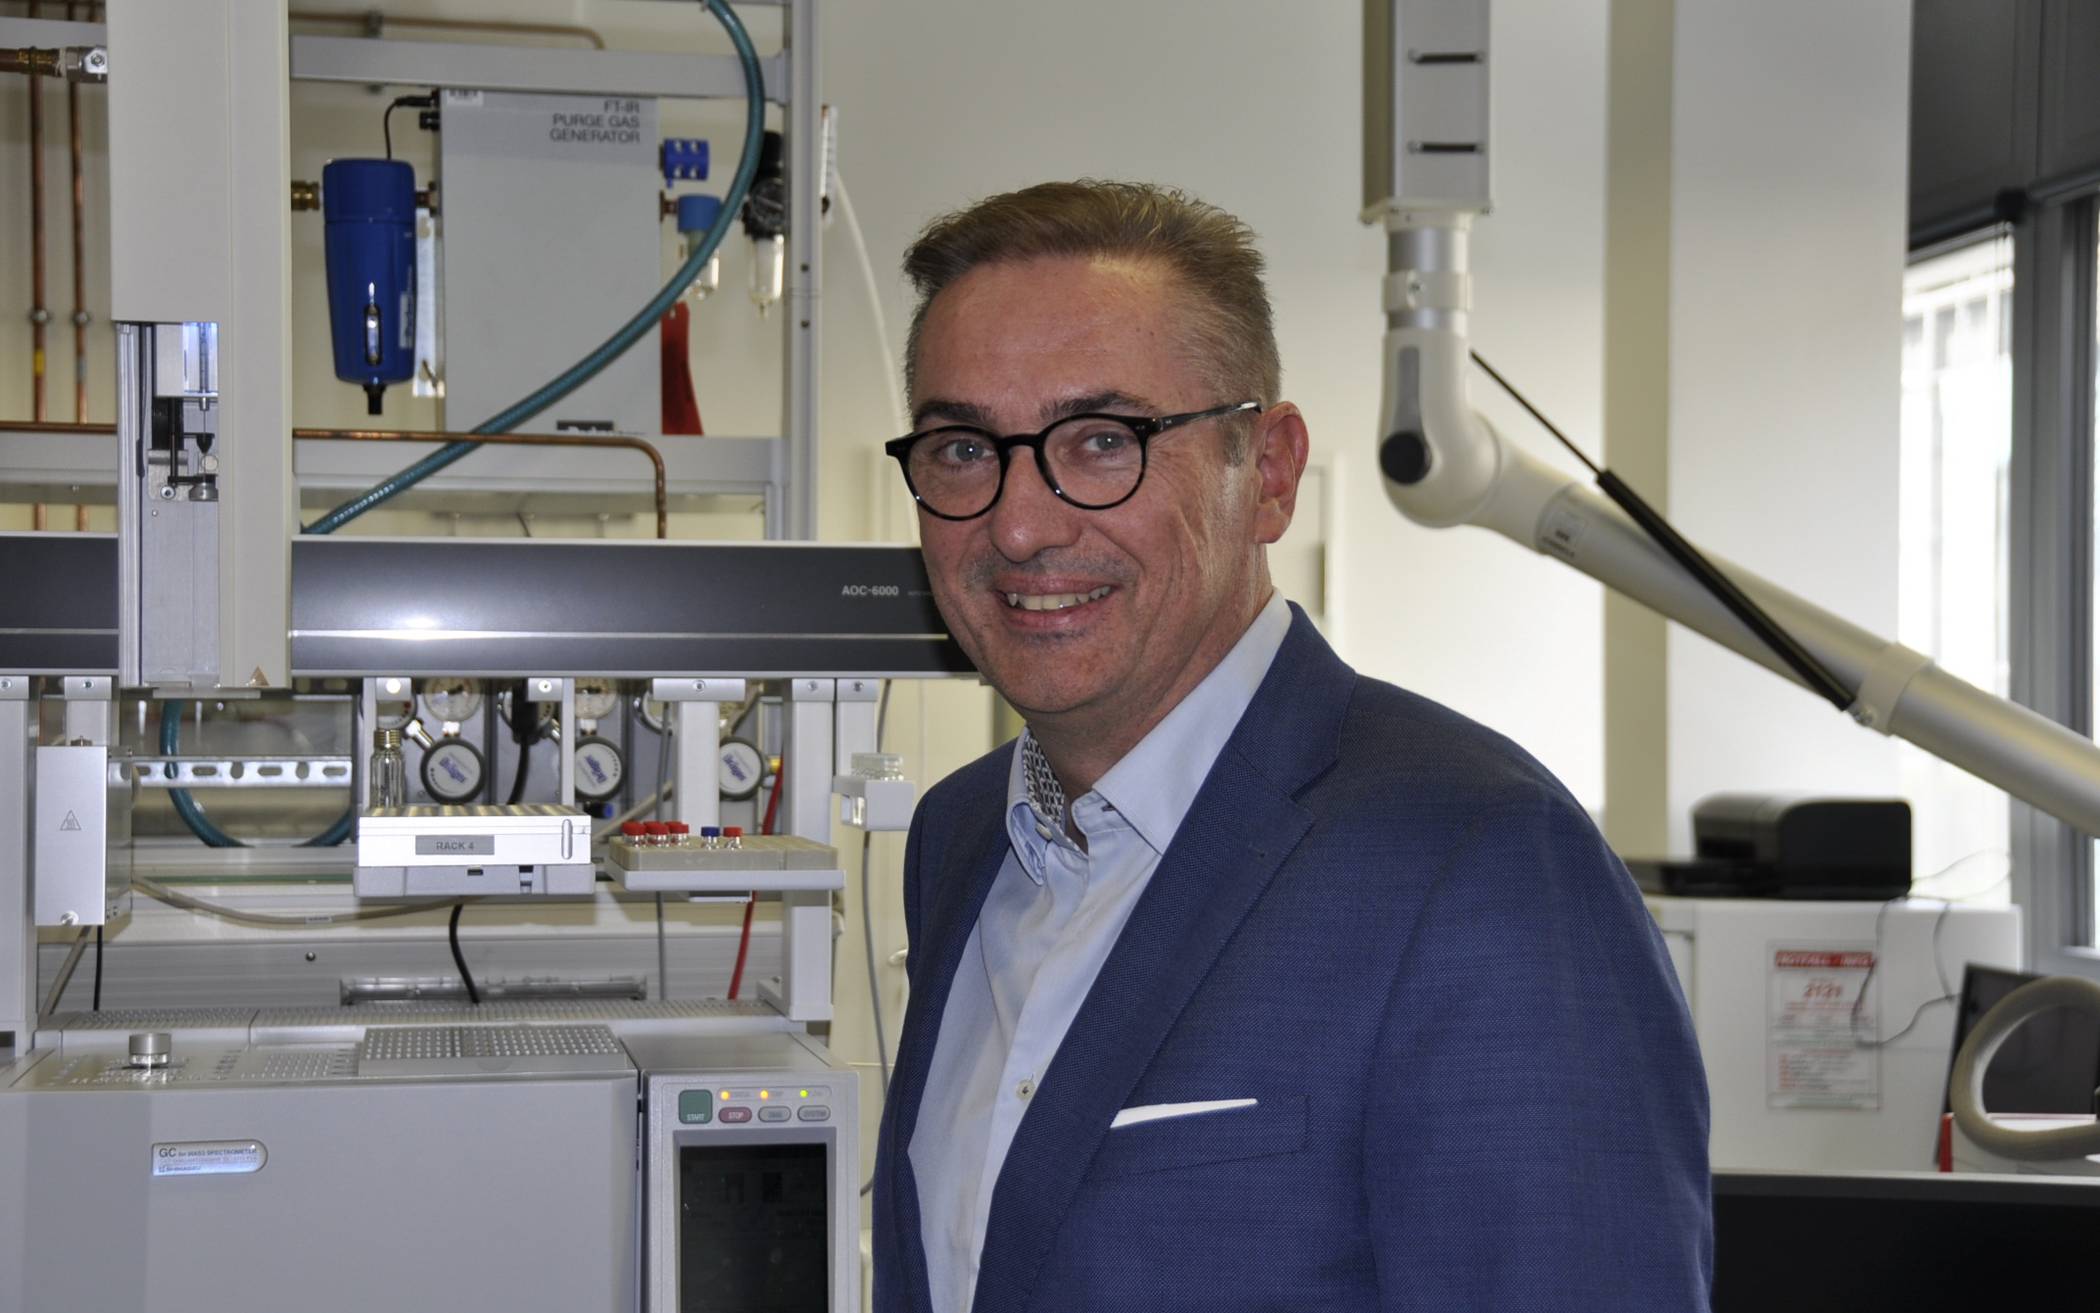  Prof. Dr. Roland Goertz leitet seit 2012 den Lehrstuhl für Chemische Sicherheit und Abwehrenden Brandschutz in der Fakultät für Maschinenbau und Sicherheitstechnik der Bergischen Universität. 